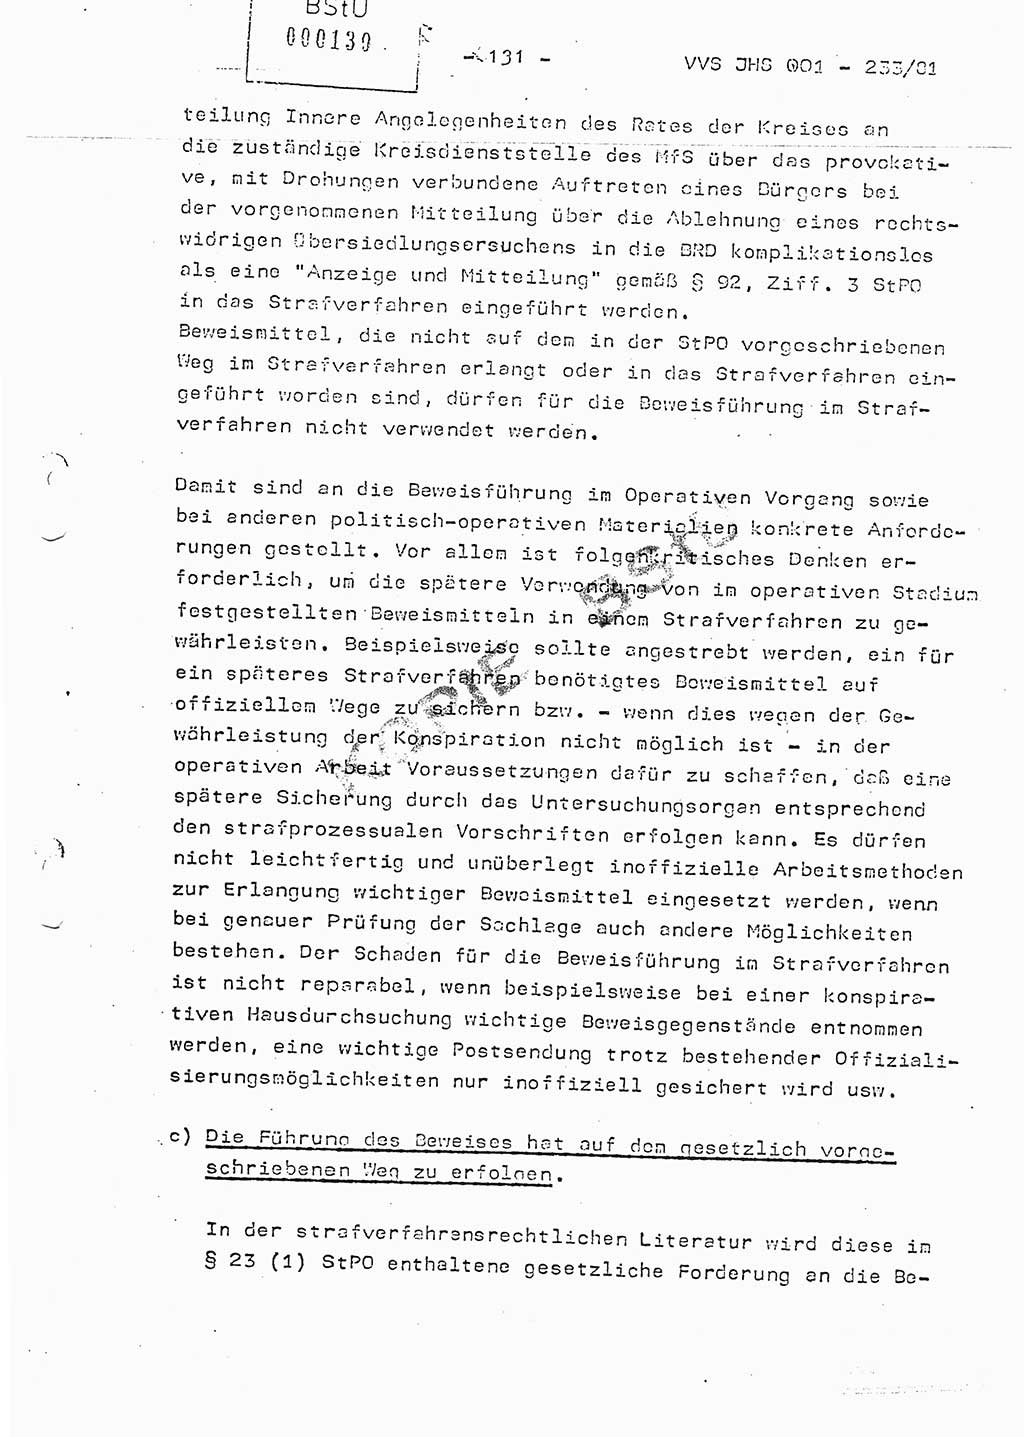 Dissertation Oberstleutnant Horst Zank (JHS), Oberstleutnant Dr. Karl-Heinz Knoblauch (JHS), Oberstleutnant Gustav-Adolf Kowalewski (HA Ⅸ), Oberstleutnant Wolfgang Plötner (HA Ⅸ), Ministerium für Staatssicherheit (MfS) [Deutsche Demokratische Republik (DDR)], Juristische Hochschule (JHS), Vertrauliche Verschlußsache (VVS) o001-233/81, Potsdam 1981, Blatt 131 (Diss. MfS DDR JHS VVS o001-233/81 1981, Bl. 131)